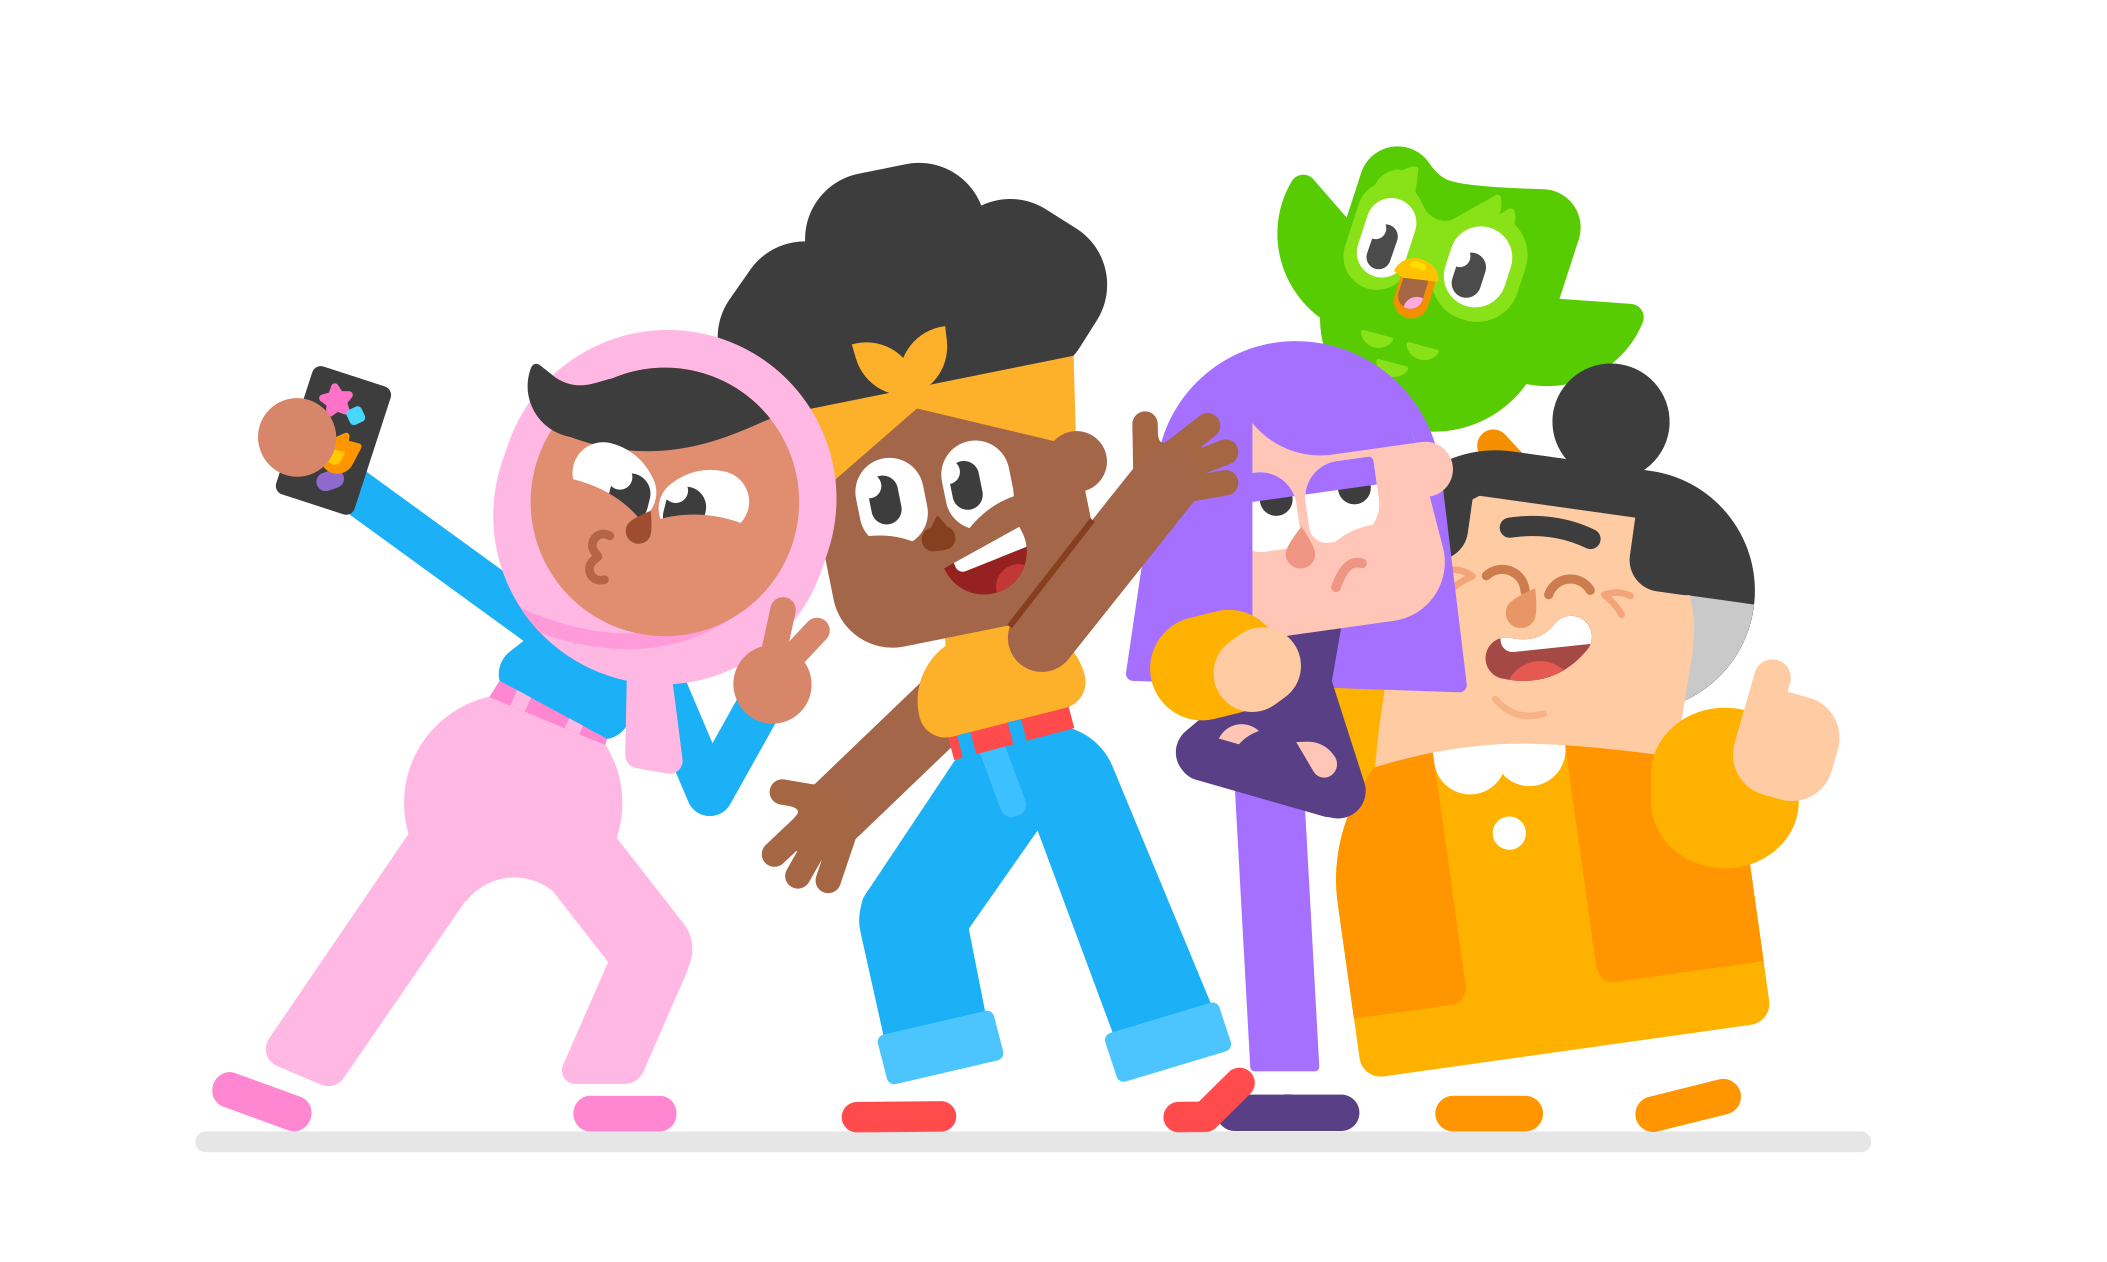 Abbildung von vier Duolingo-Charakteren – Sari, Bea, Lilli und Lucy – und der Eule Duo, die ein Selfie machen.